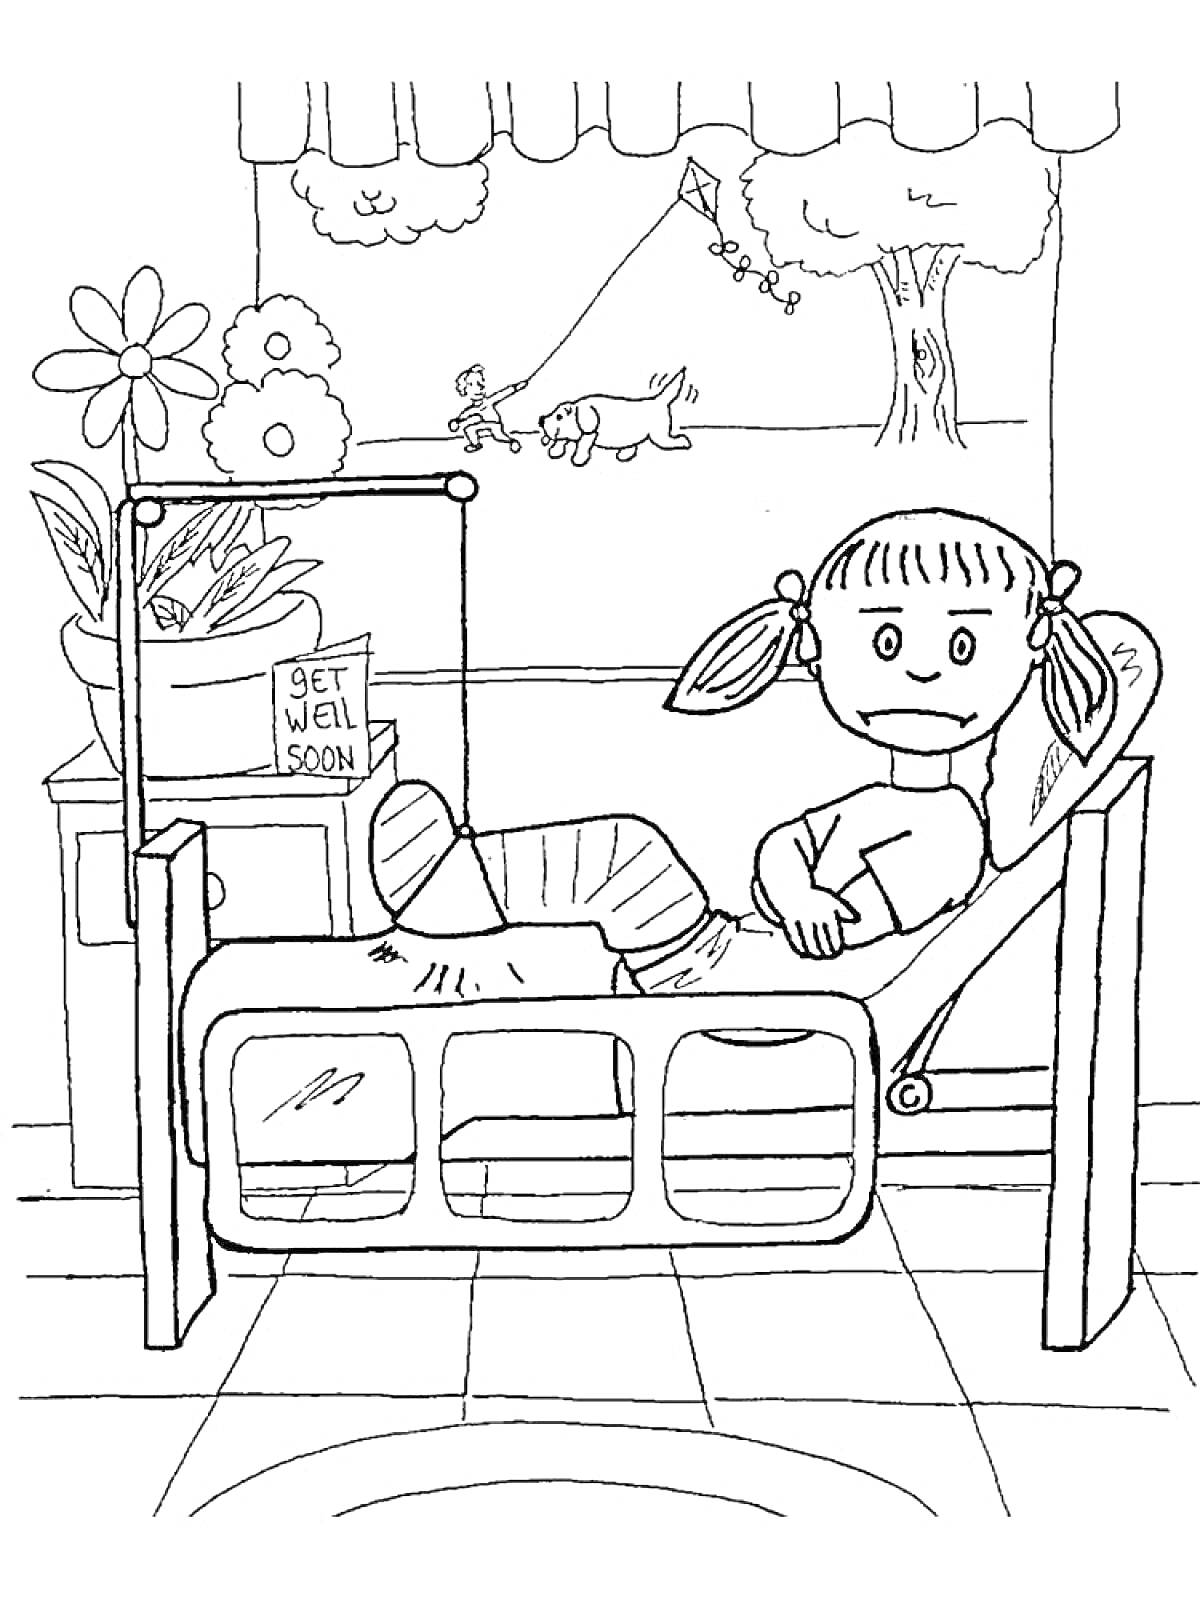 Раскраска Девочка в больничной палате с гипсом на ноге, кровать, цветы, картина с пейзажем, окно с деревом, собакой и ребенком, карточка 